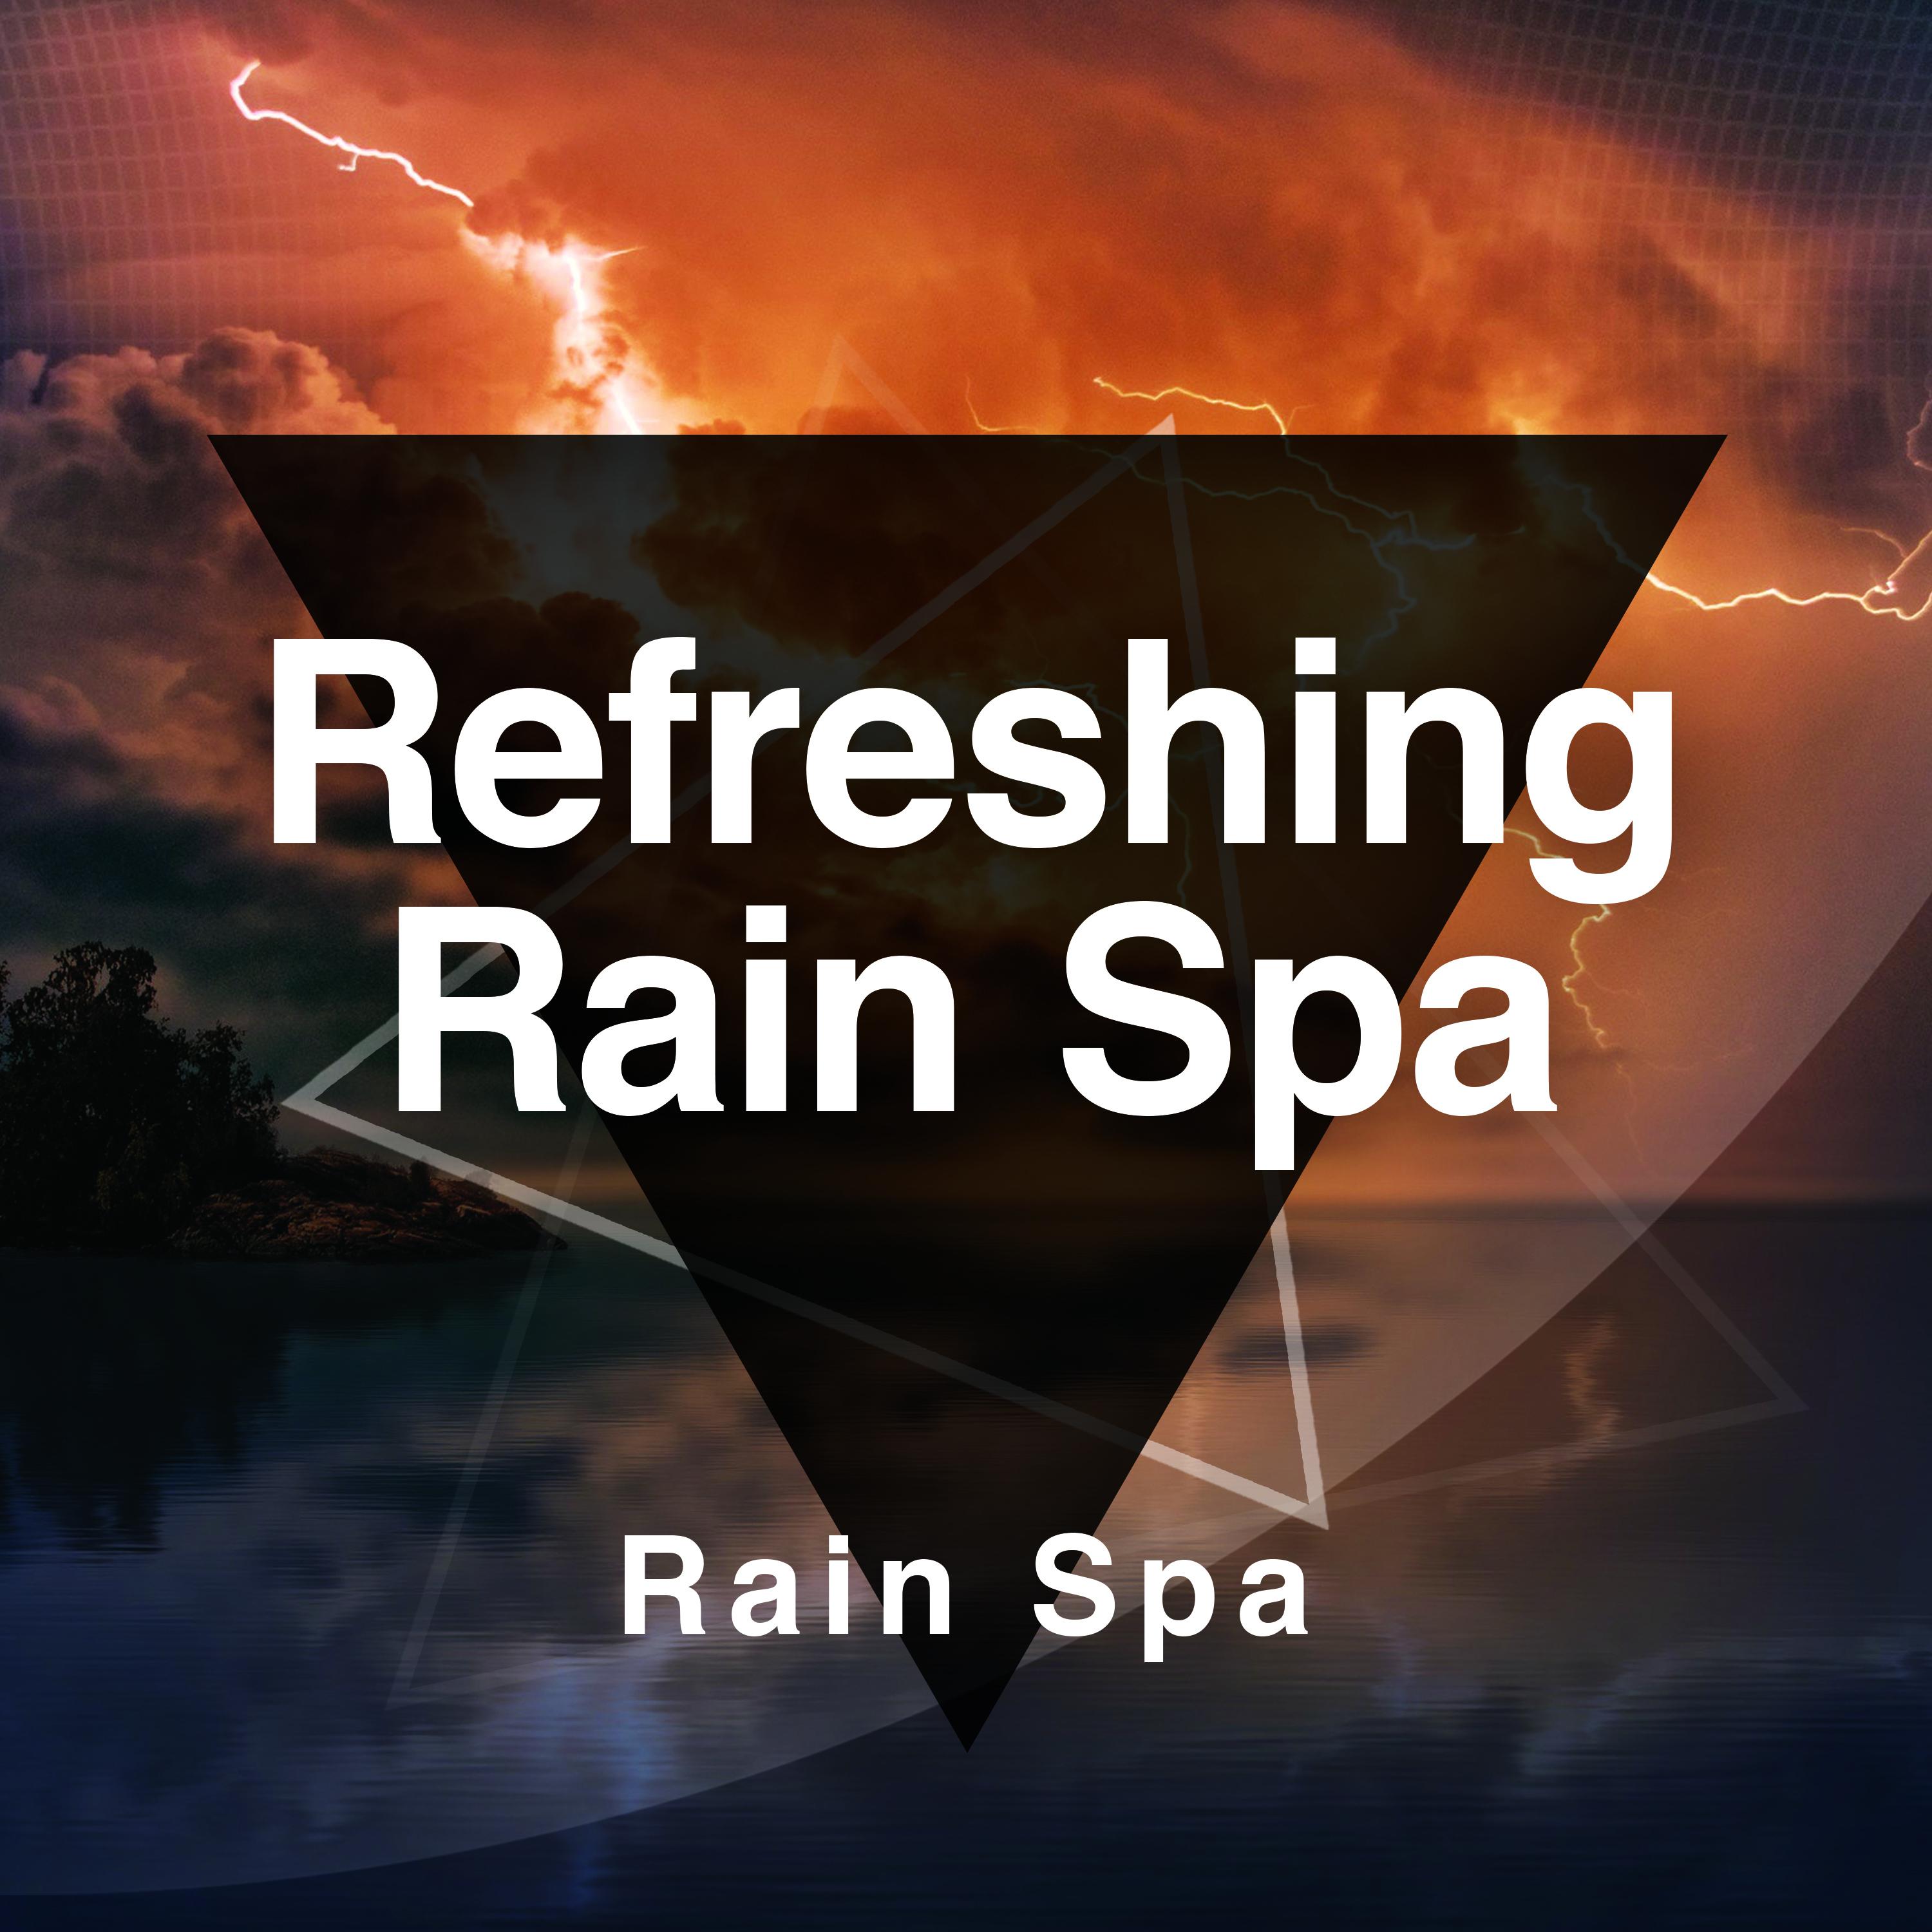 Refreshing Rain Spa